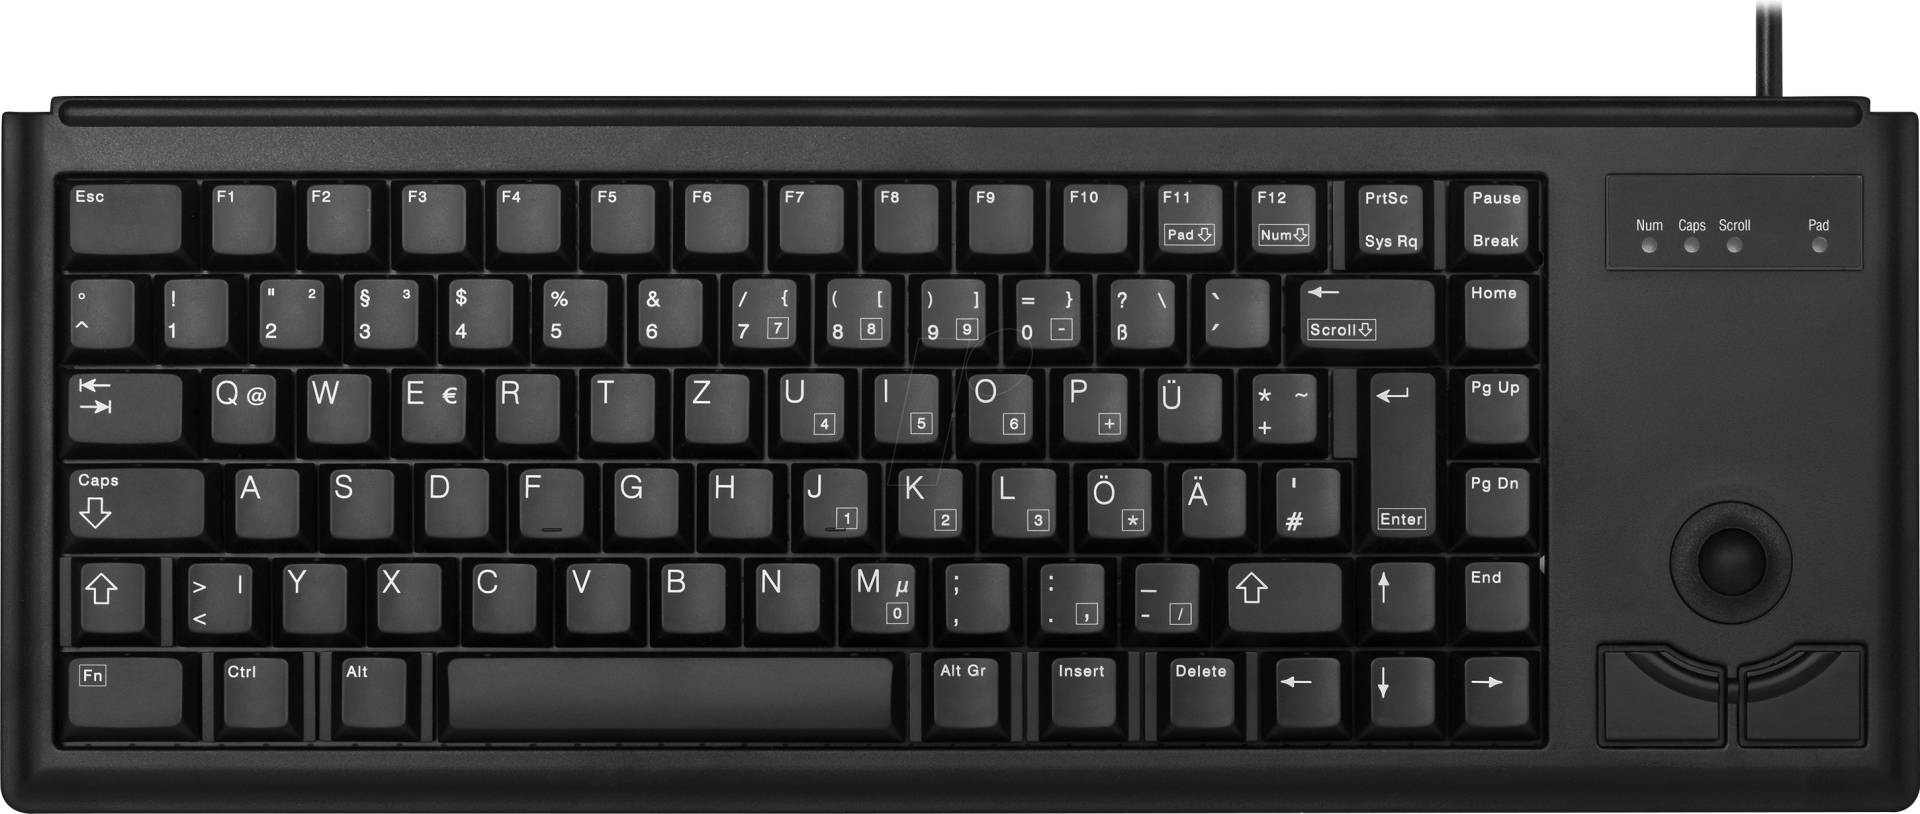 G84-4400LPBEU-2 - Tastatur, PS/2, schwarz, kompakt, Trackball, US von Cherry